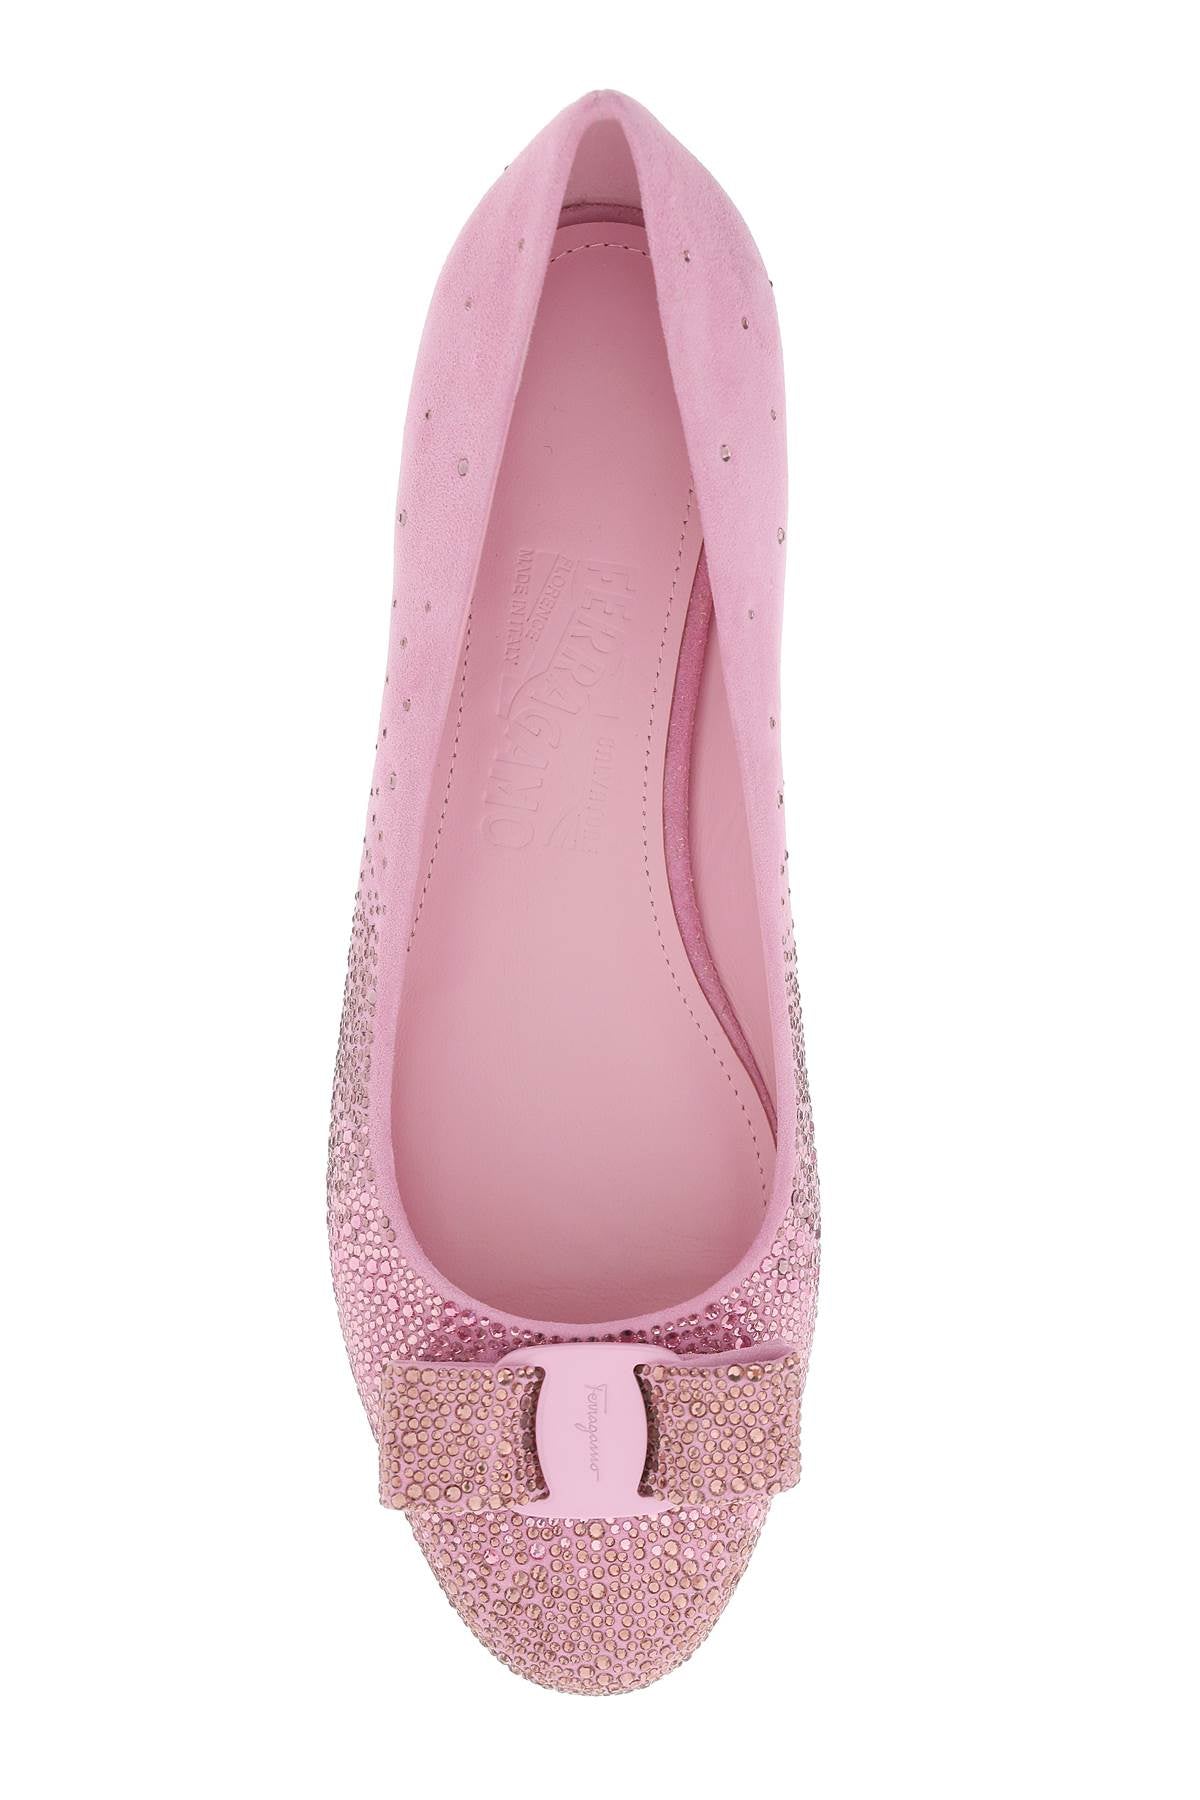 Giày bệt thời trang Ferragamo màu hồng dành cho nữ